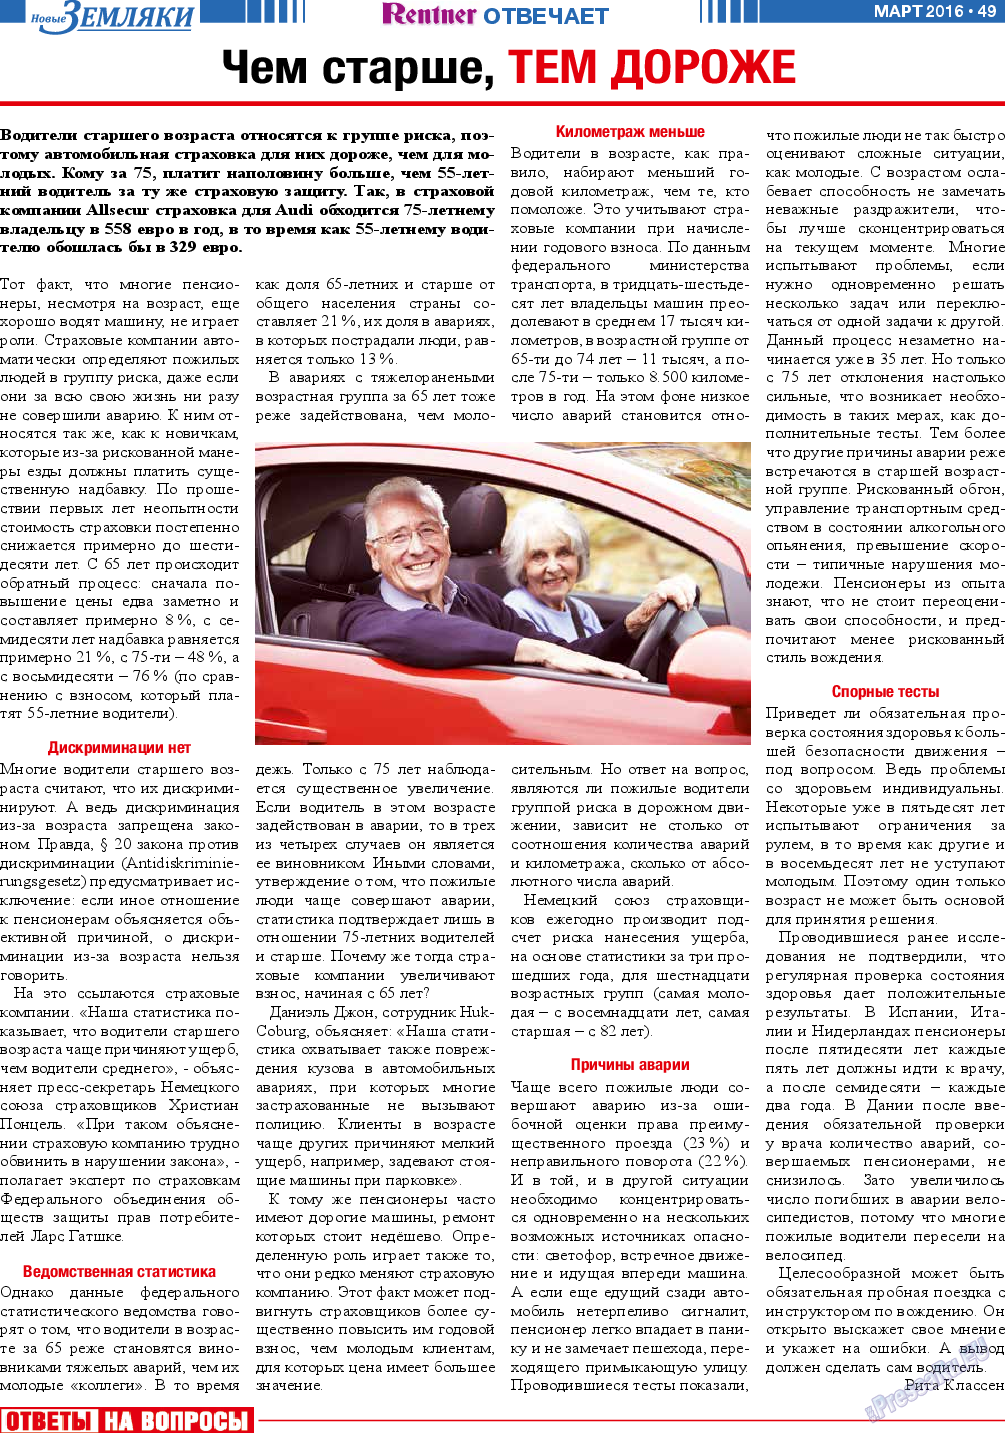 Новые Земляки, газета. 2016 №3 стр.49